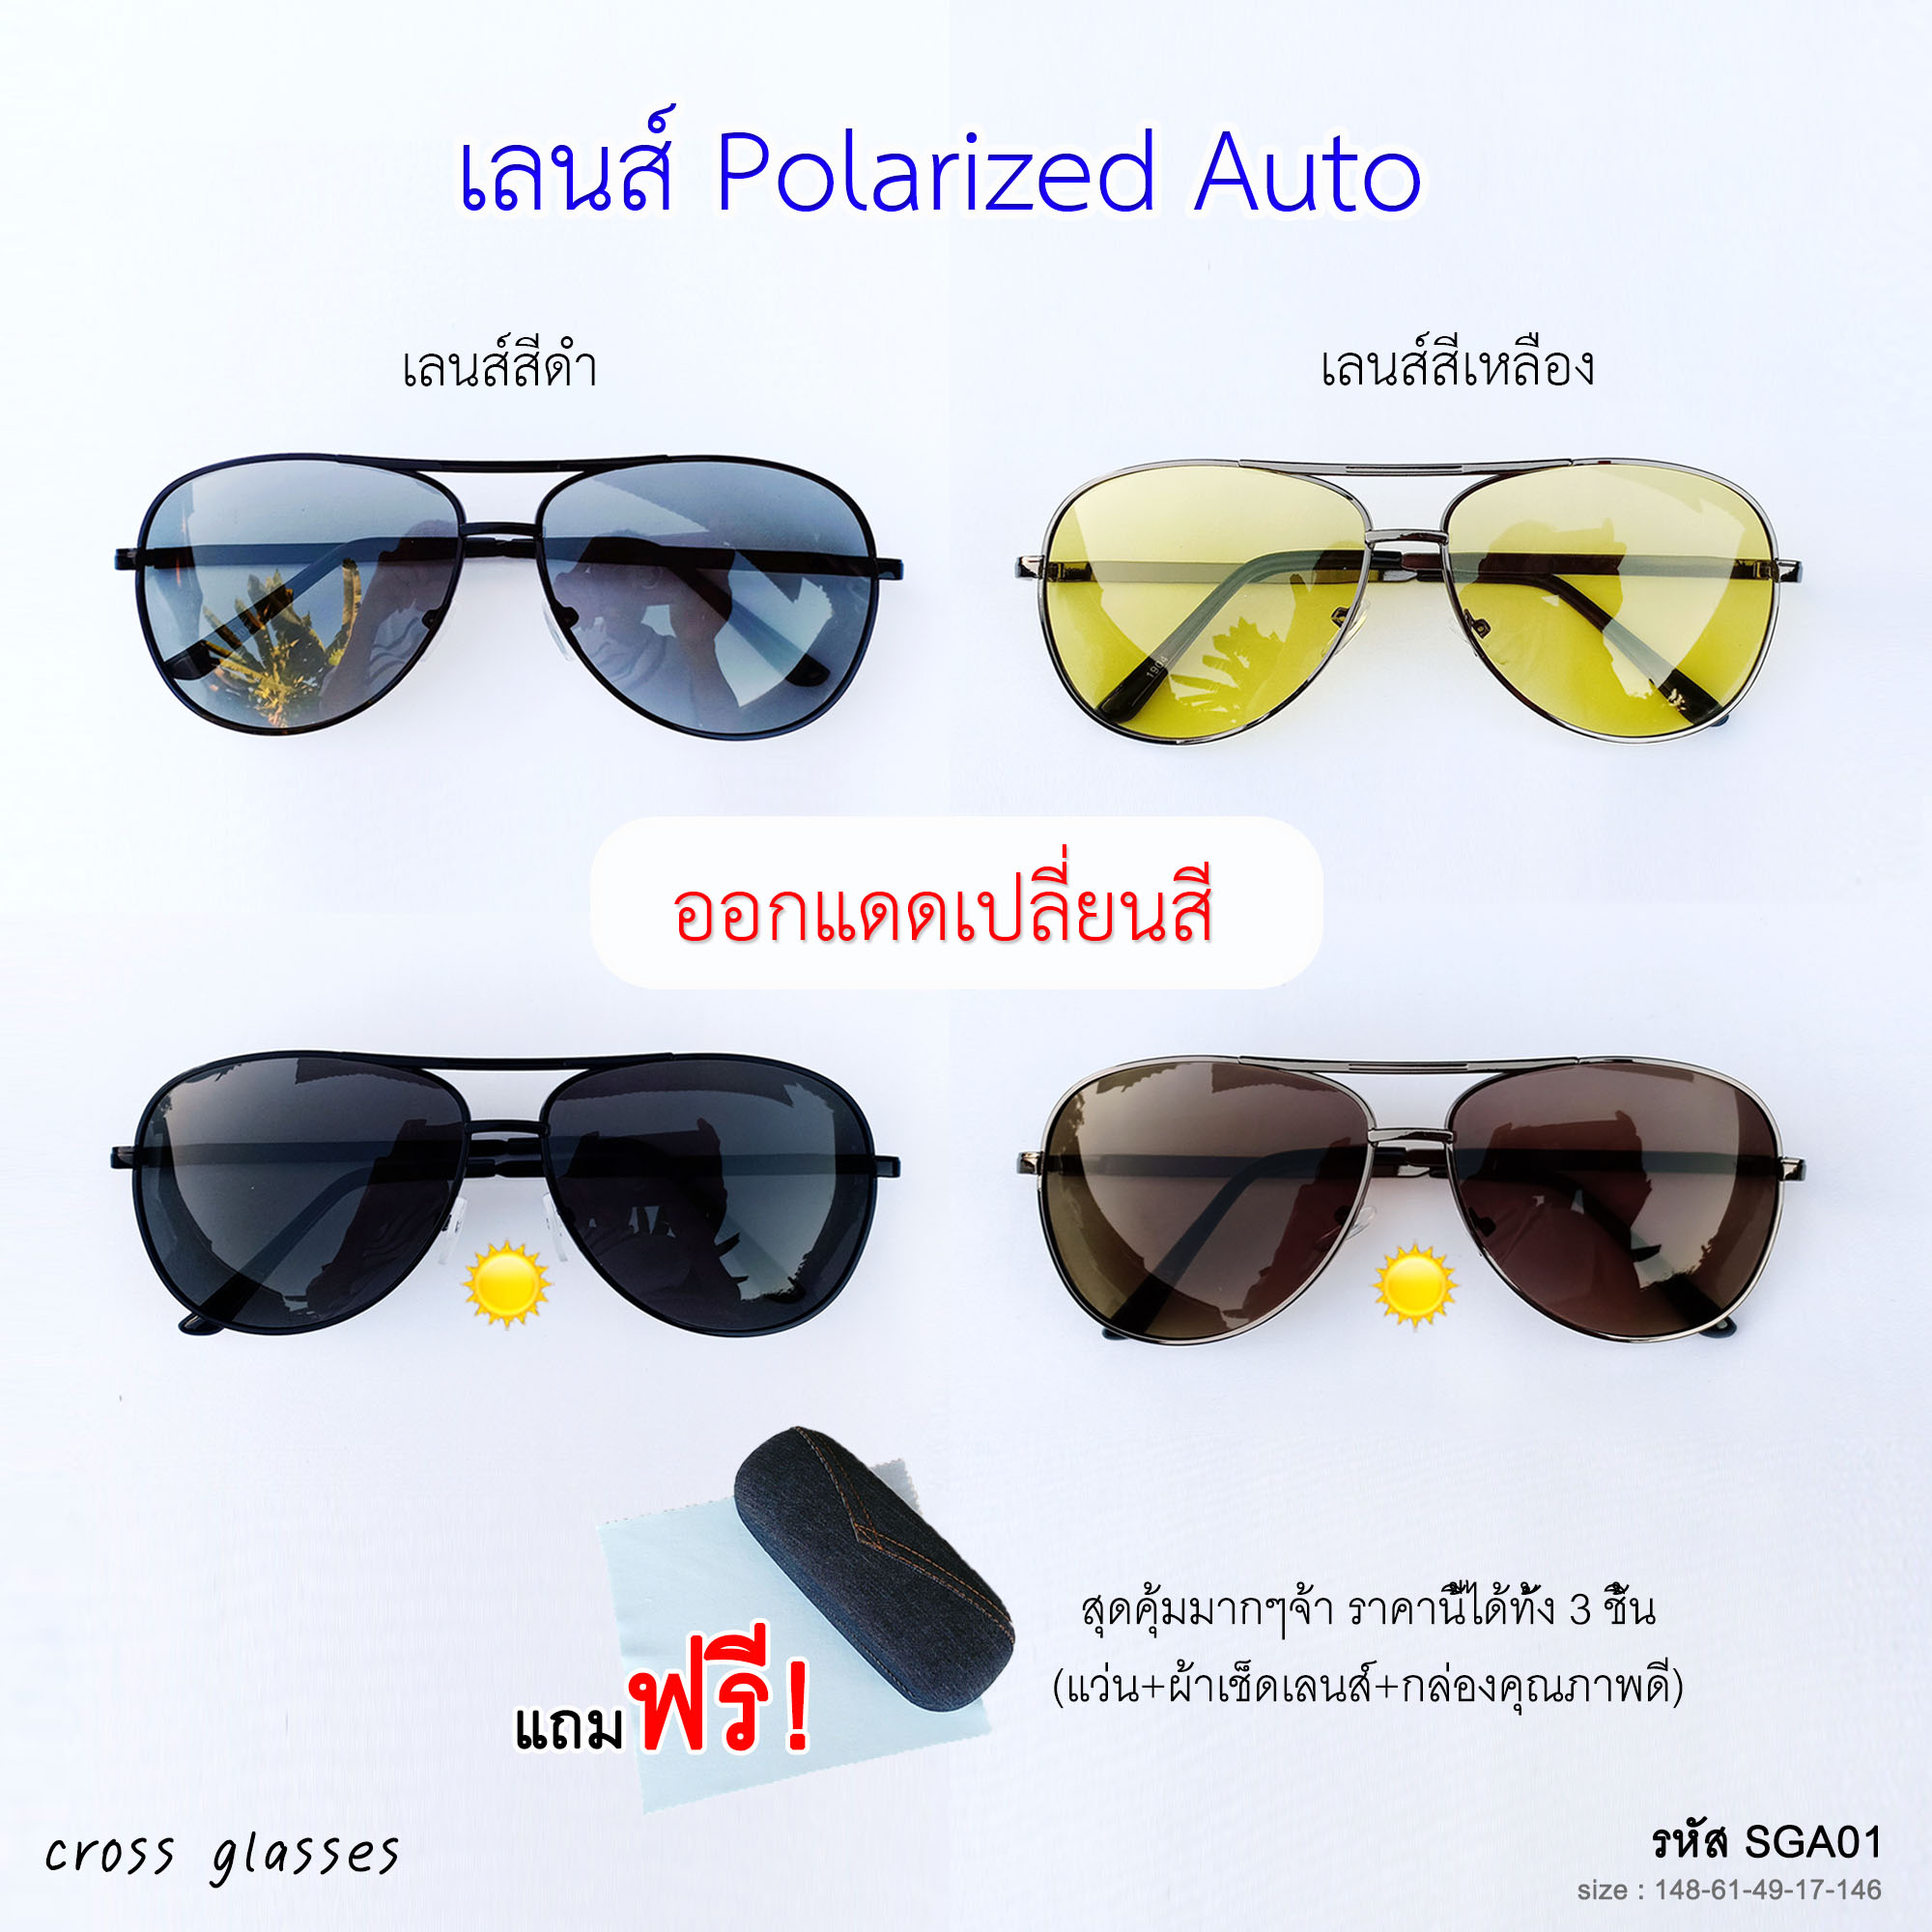 แว่นกันแดด เลนส์ Polarized Auto ออกแดดเปลี่ยนสี แว่นตาขับรถ รหัส SGA01